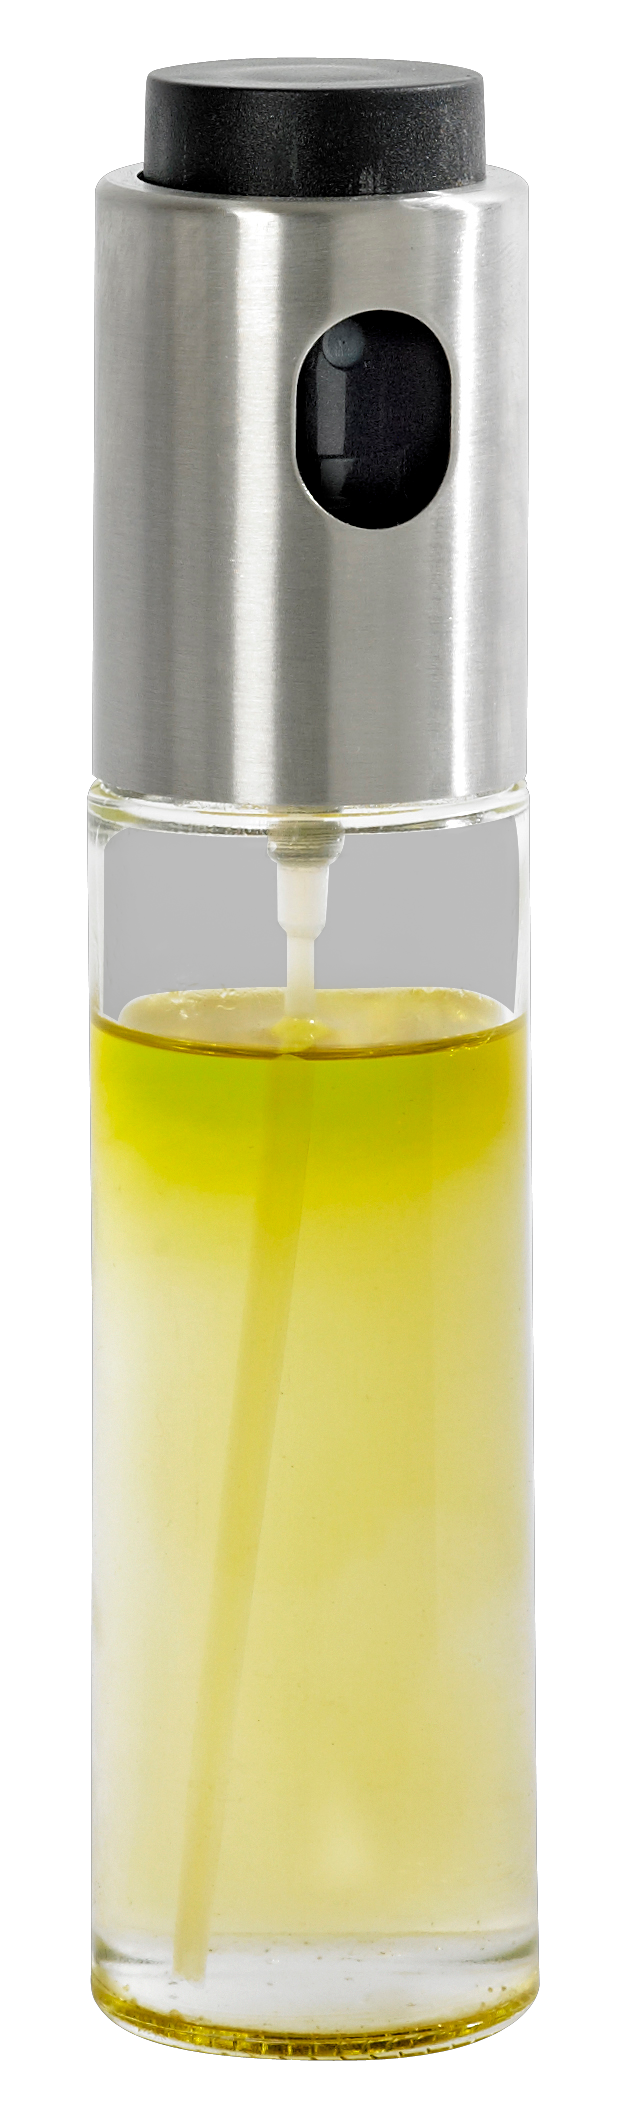 Spray d'huile pour cuisine — Homloot